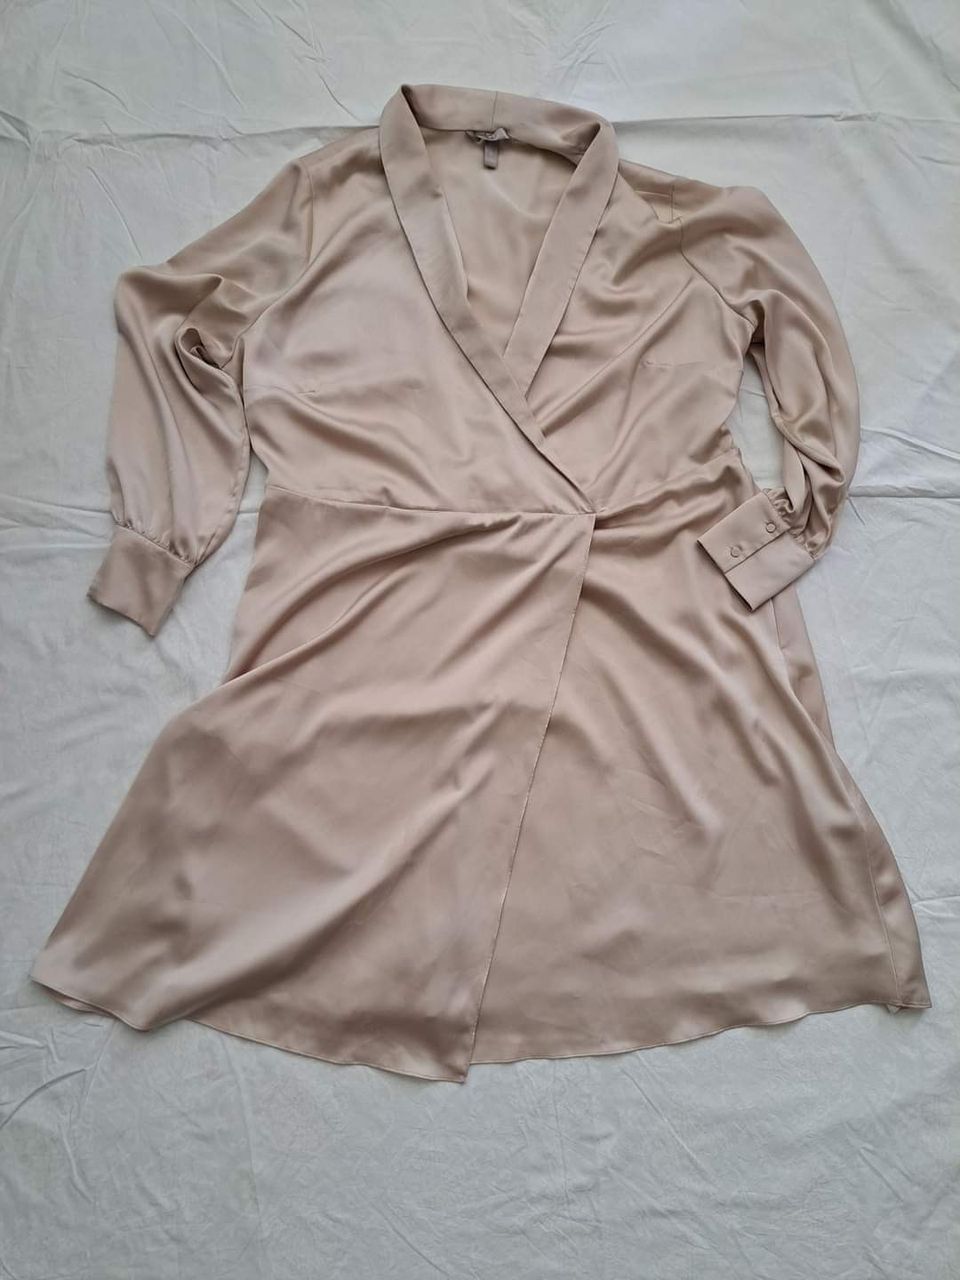 Silkkituntuinen midi mekko koko XXL. Kk 66cm